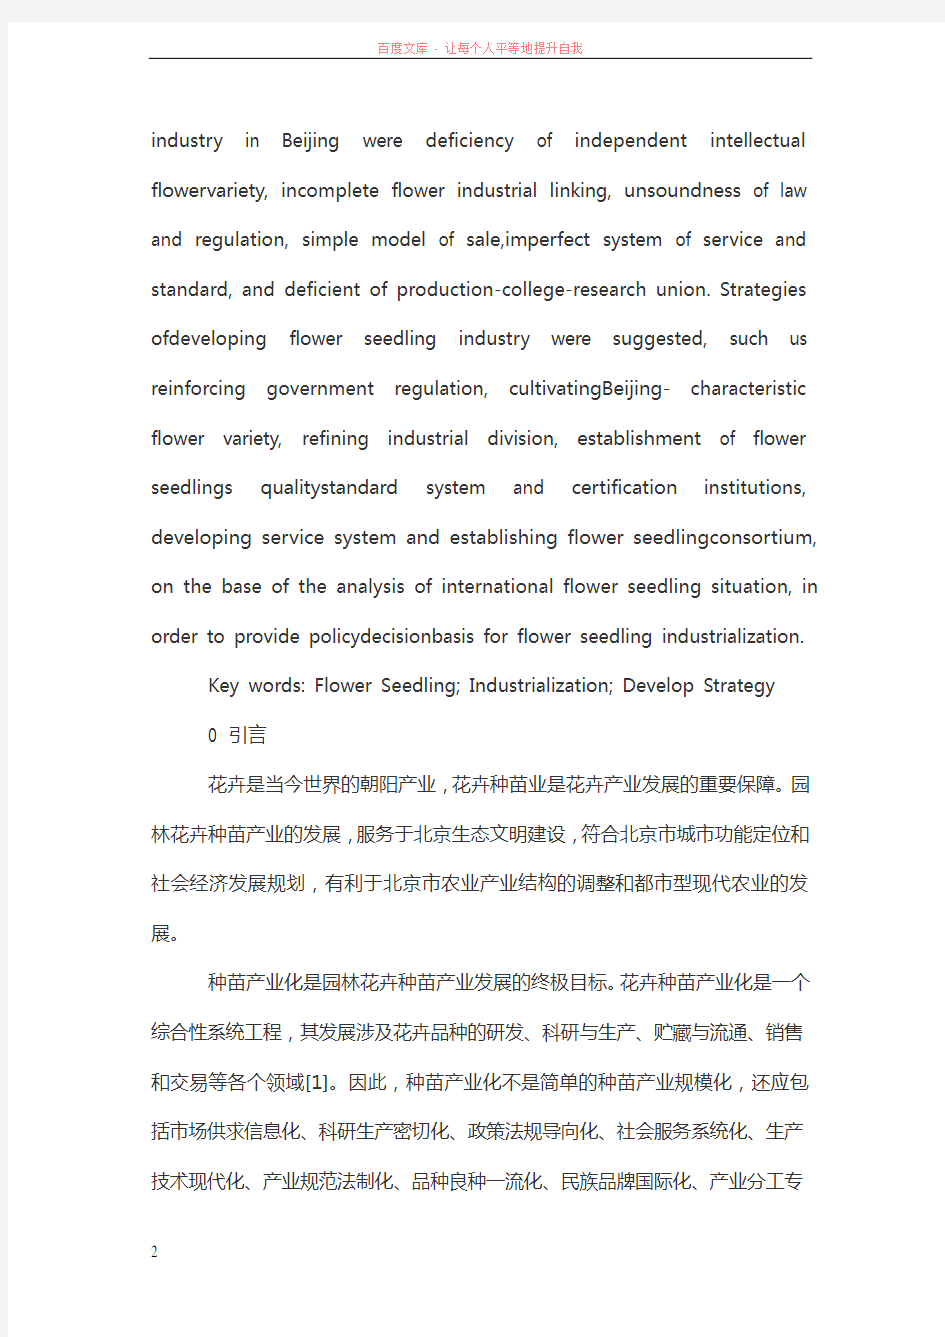 北京花卉种苗产业现状分析与发展策略 (1)